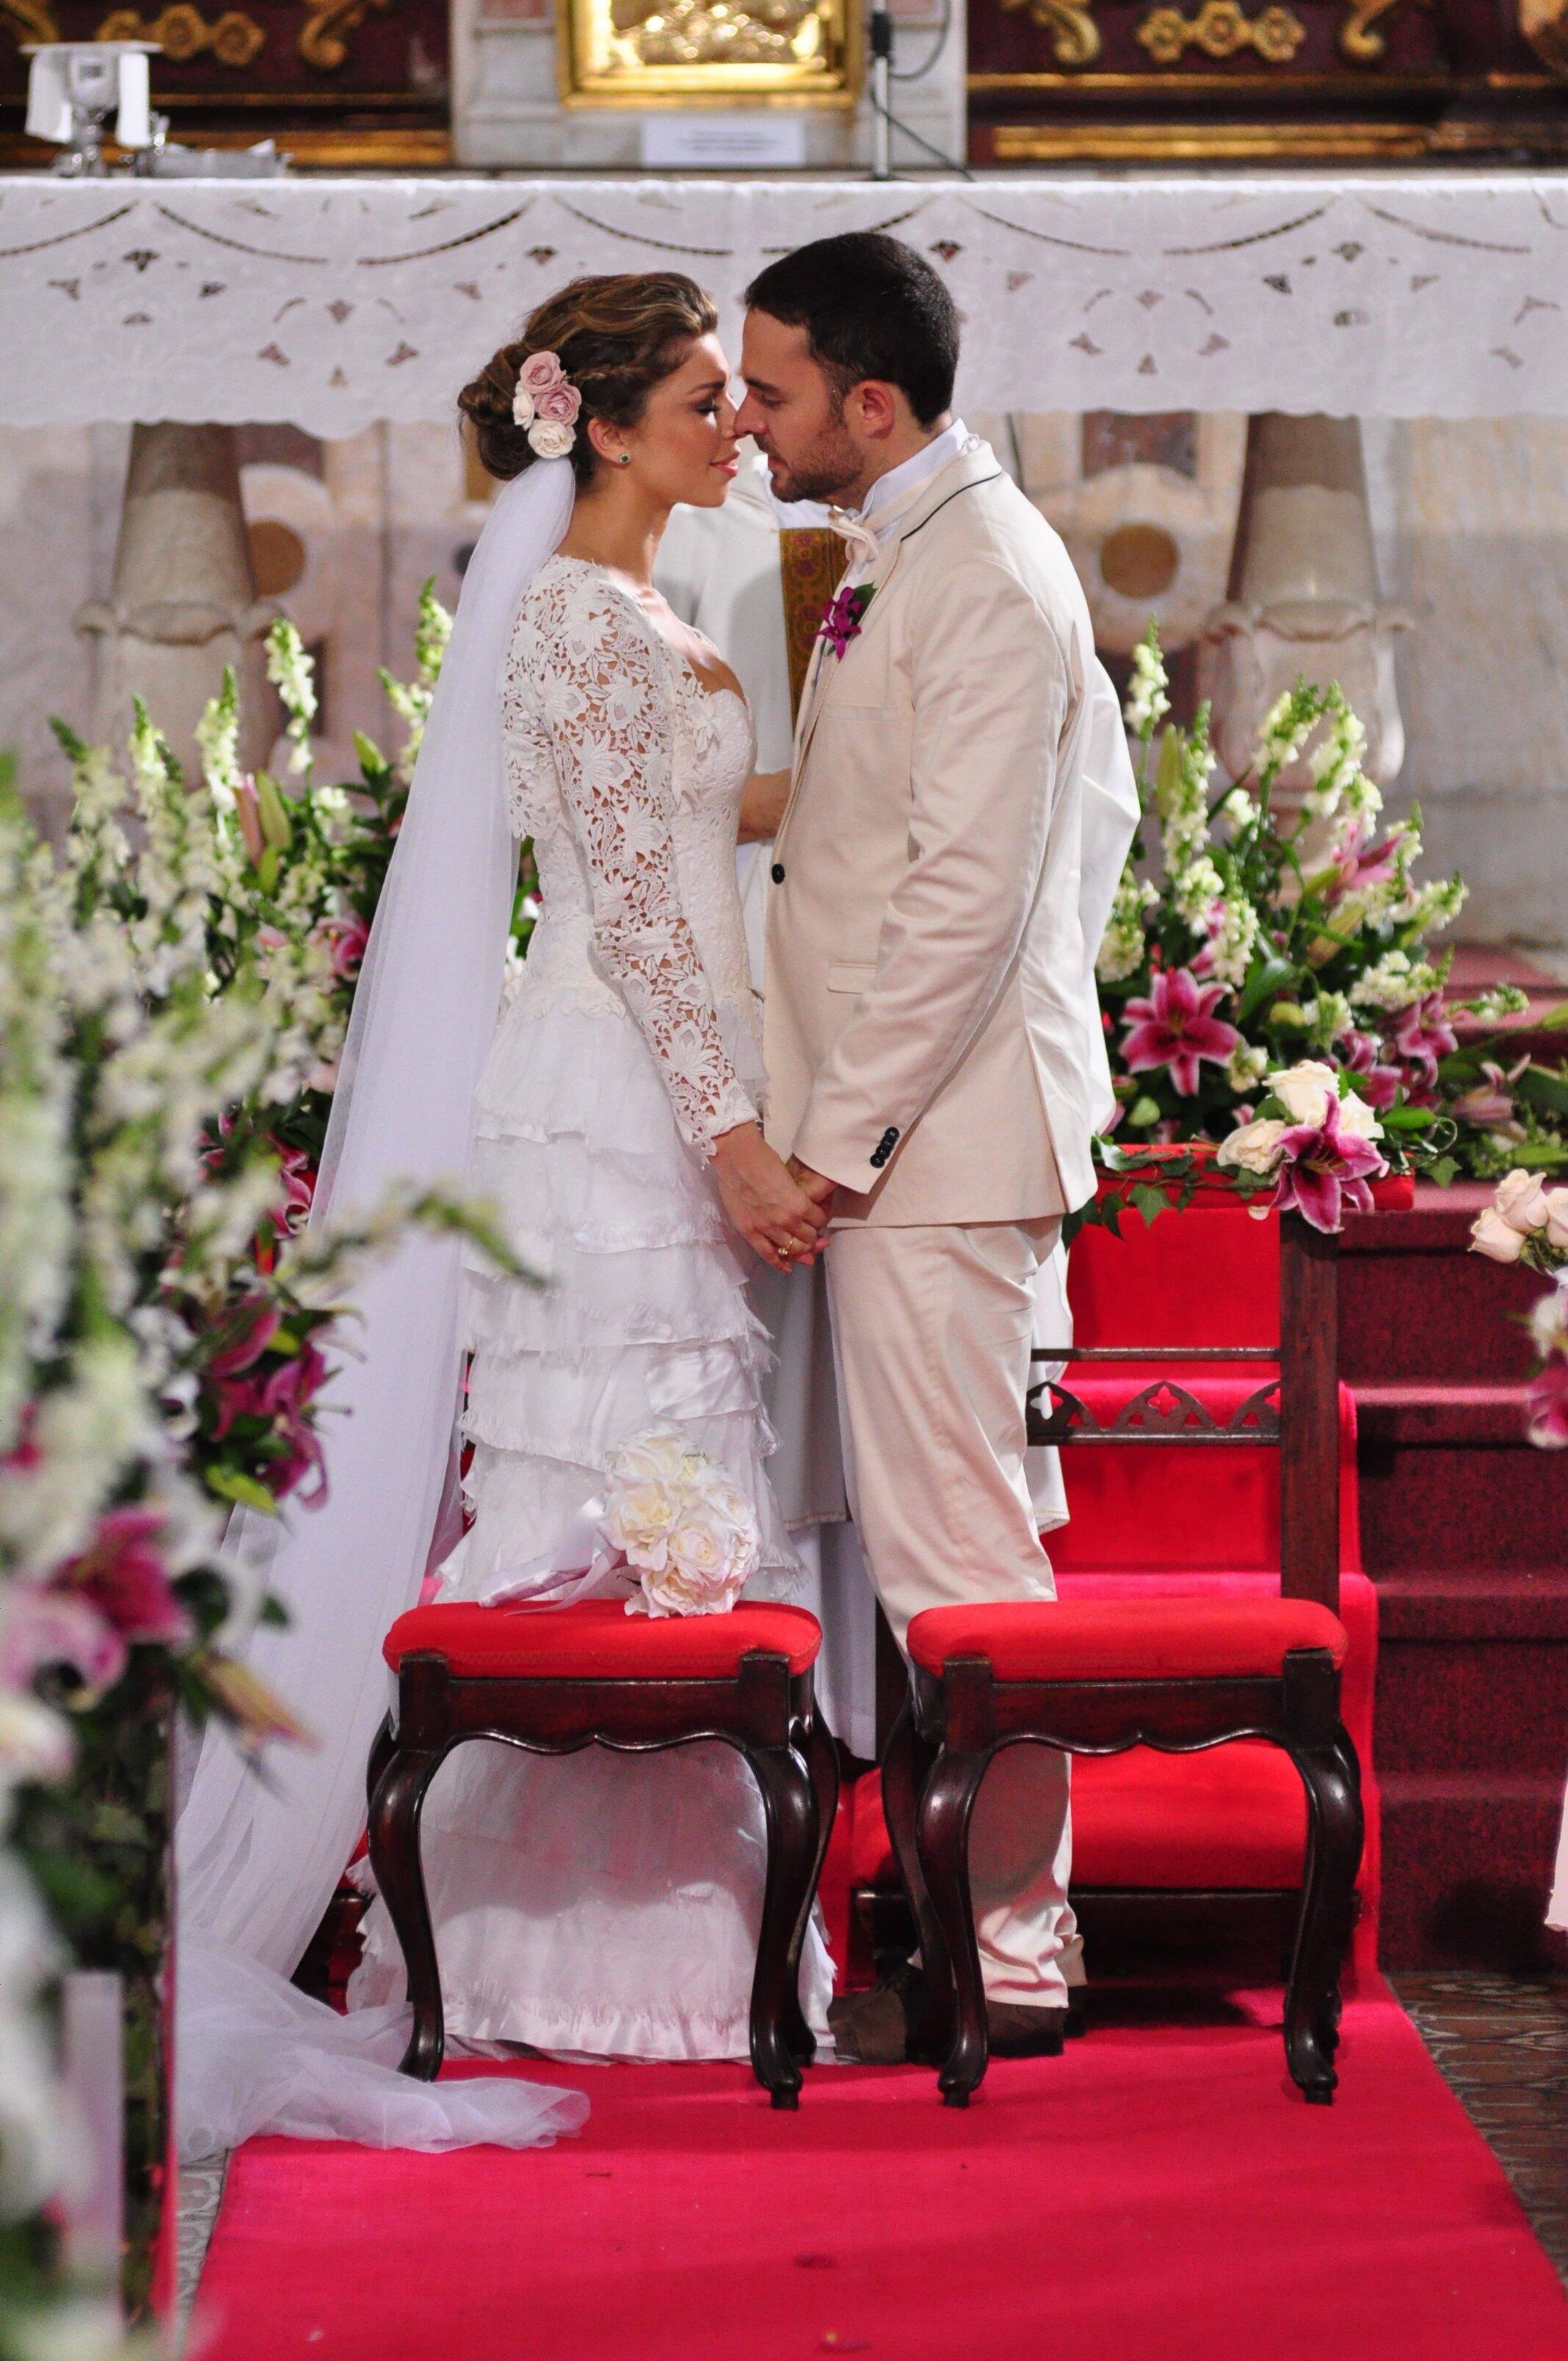 Lucena (Grazi Massafera) sobe ao altar com Juan (Manolo Cardona)em "Aquele Beijo". Foto: Divulgação/TV Globo